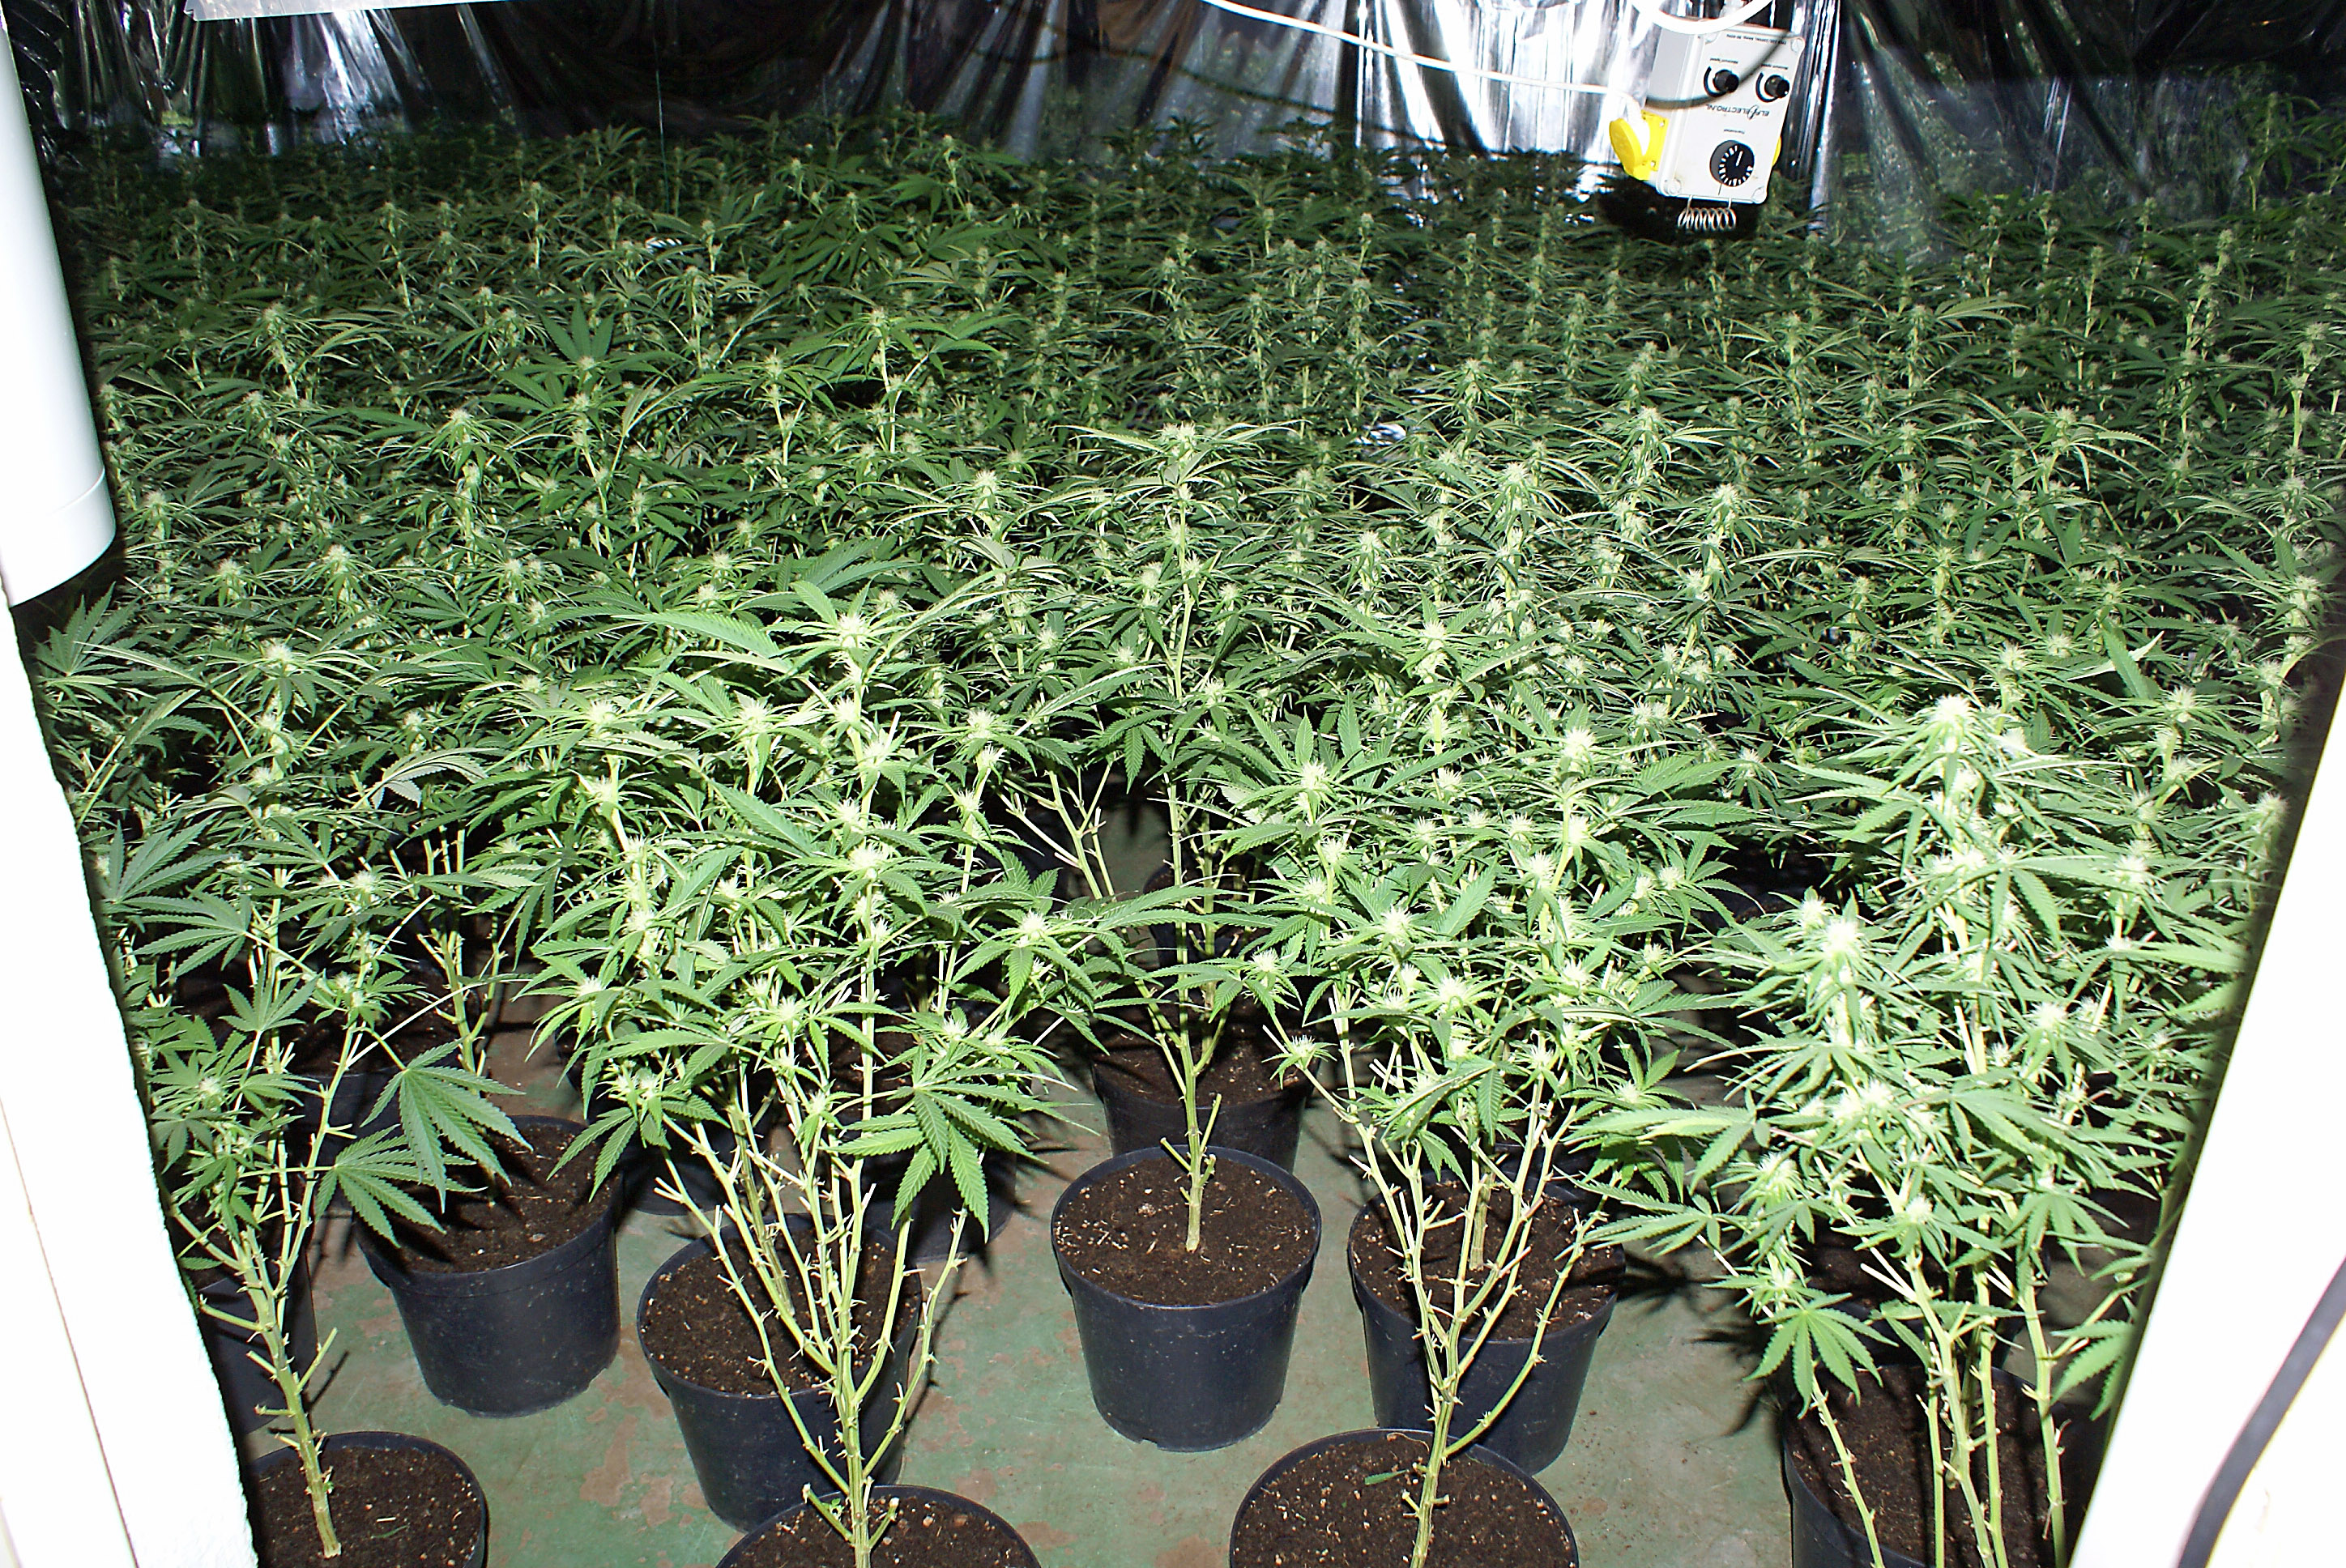 Den privata odlingen av cannabis blir allt vanligare.